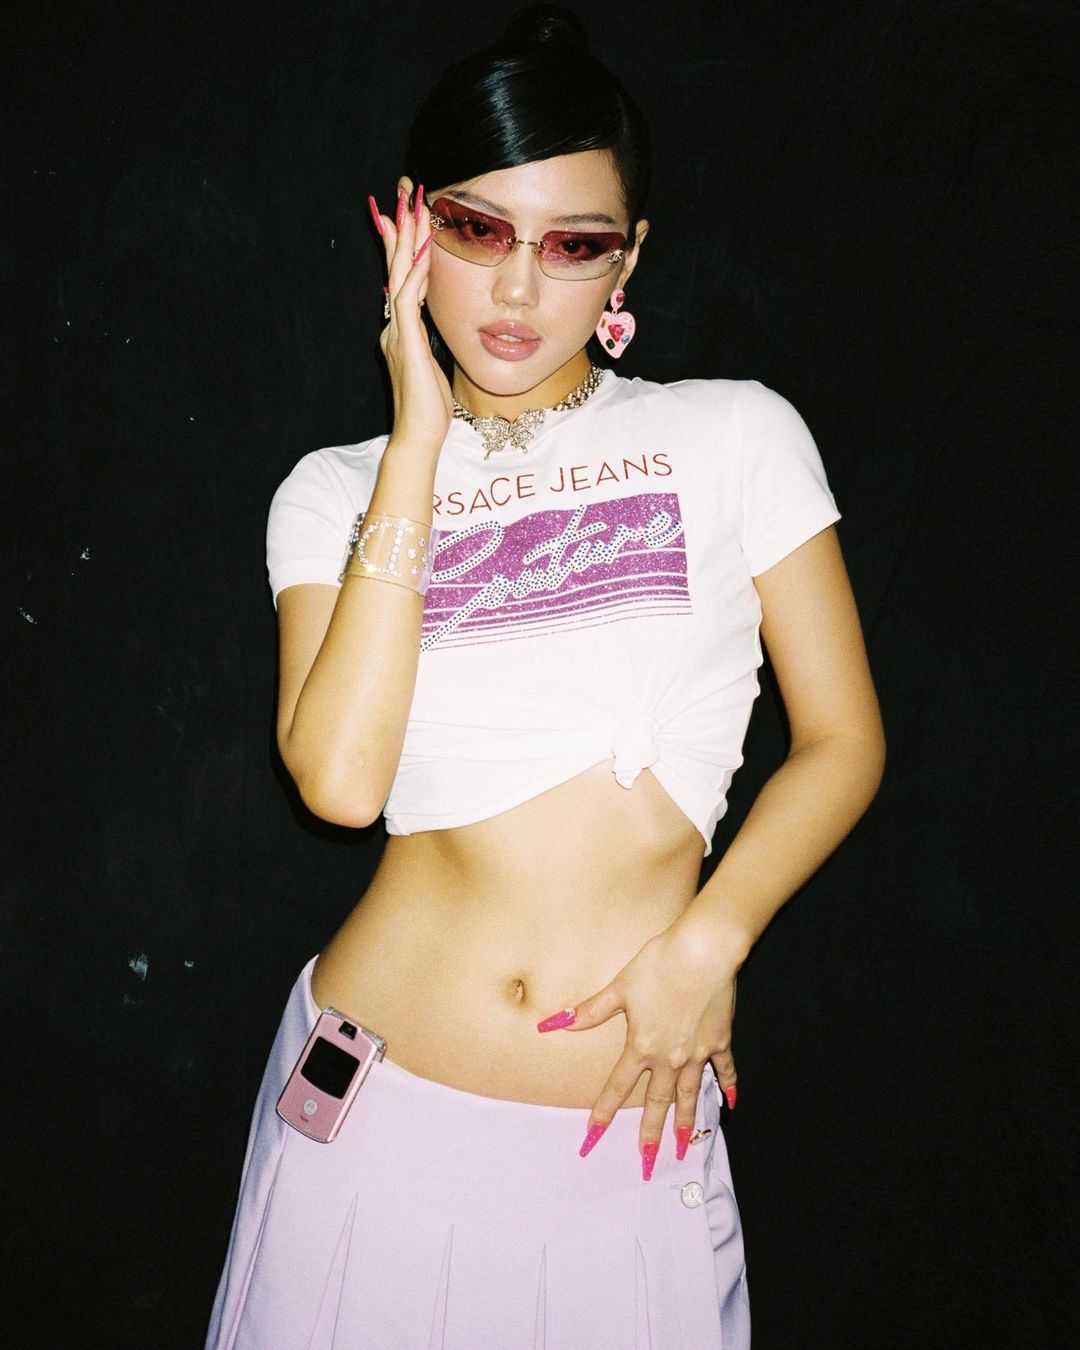 "Cô em Trendy" - Khánh Linh phối croptop cùng một chiếc chân váy cạp trễ gợi người ta nhớ đến phong cách của người nổi tiếng cuối thập niên 90 đầu 2000.